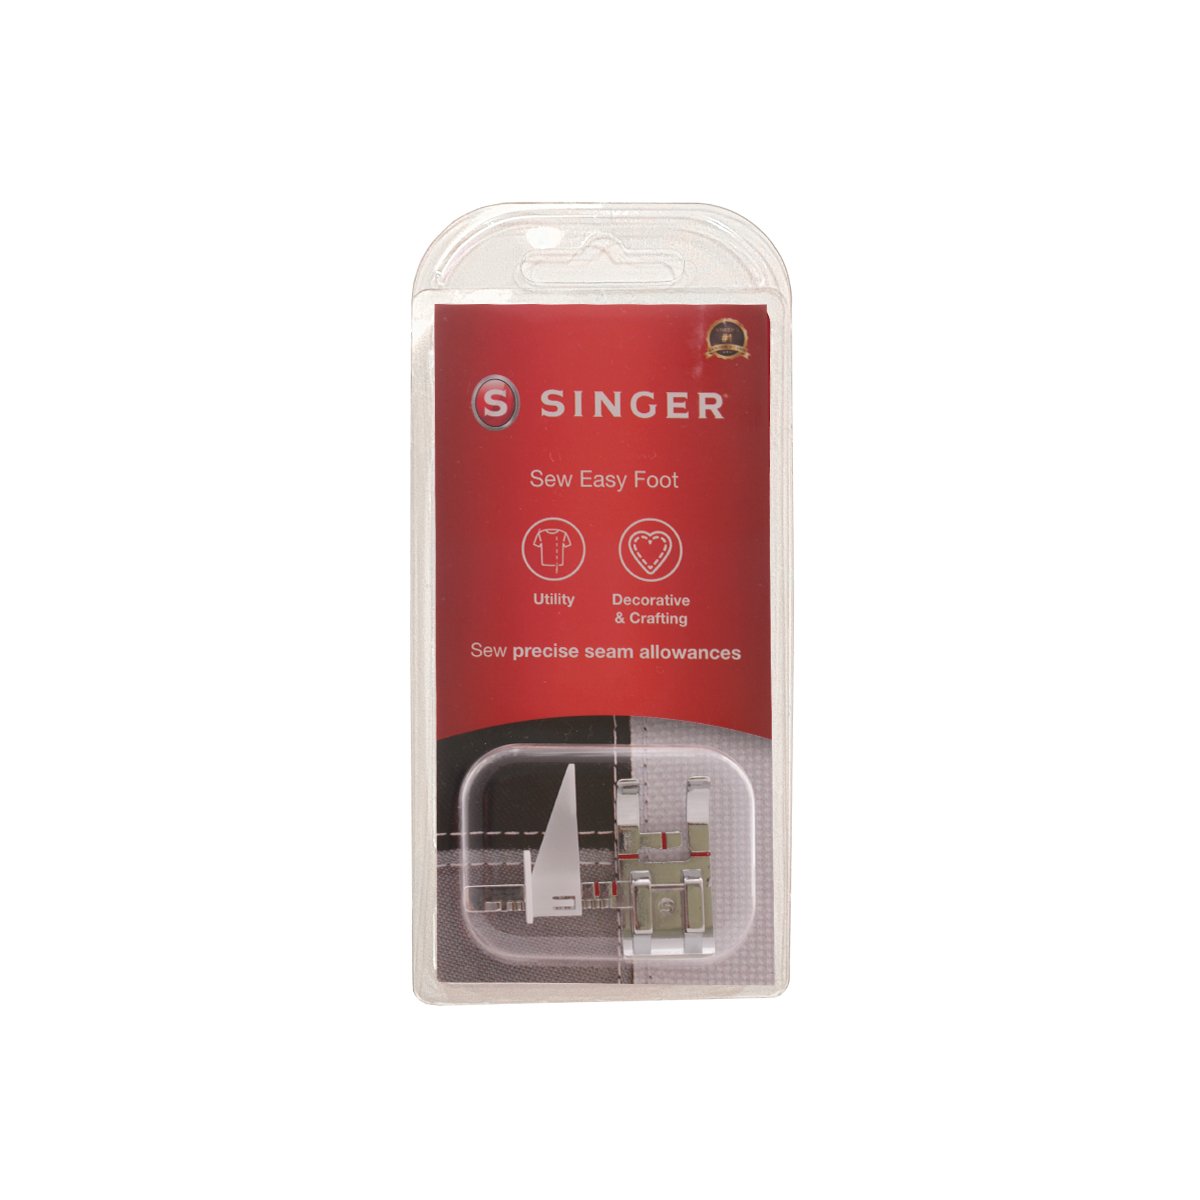 Prensatelas Singer de costura fácil y precisa con guía ajustable para máquinas de coser de caña baja, 250029647.06